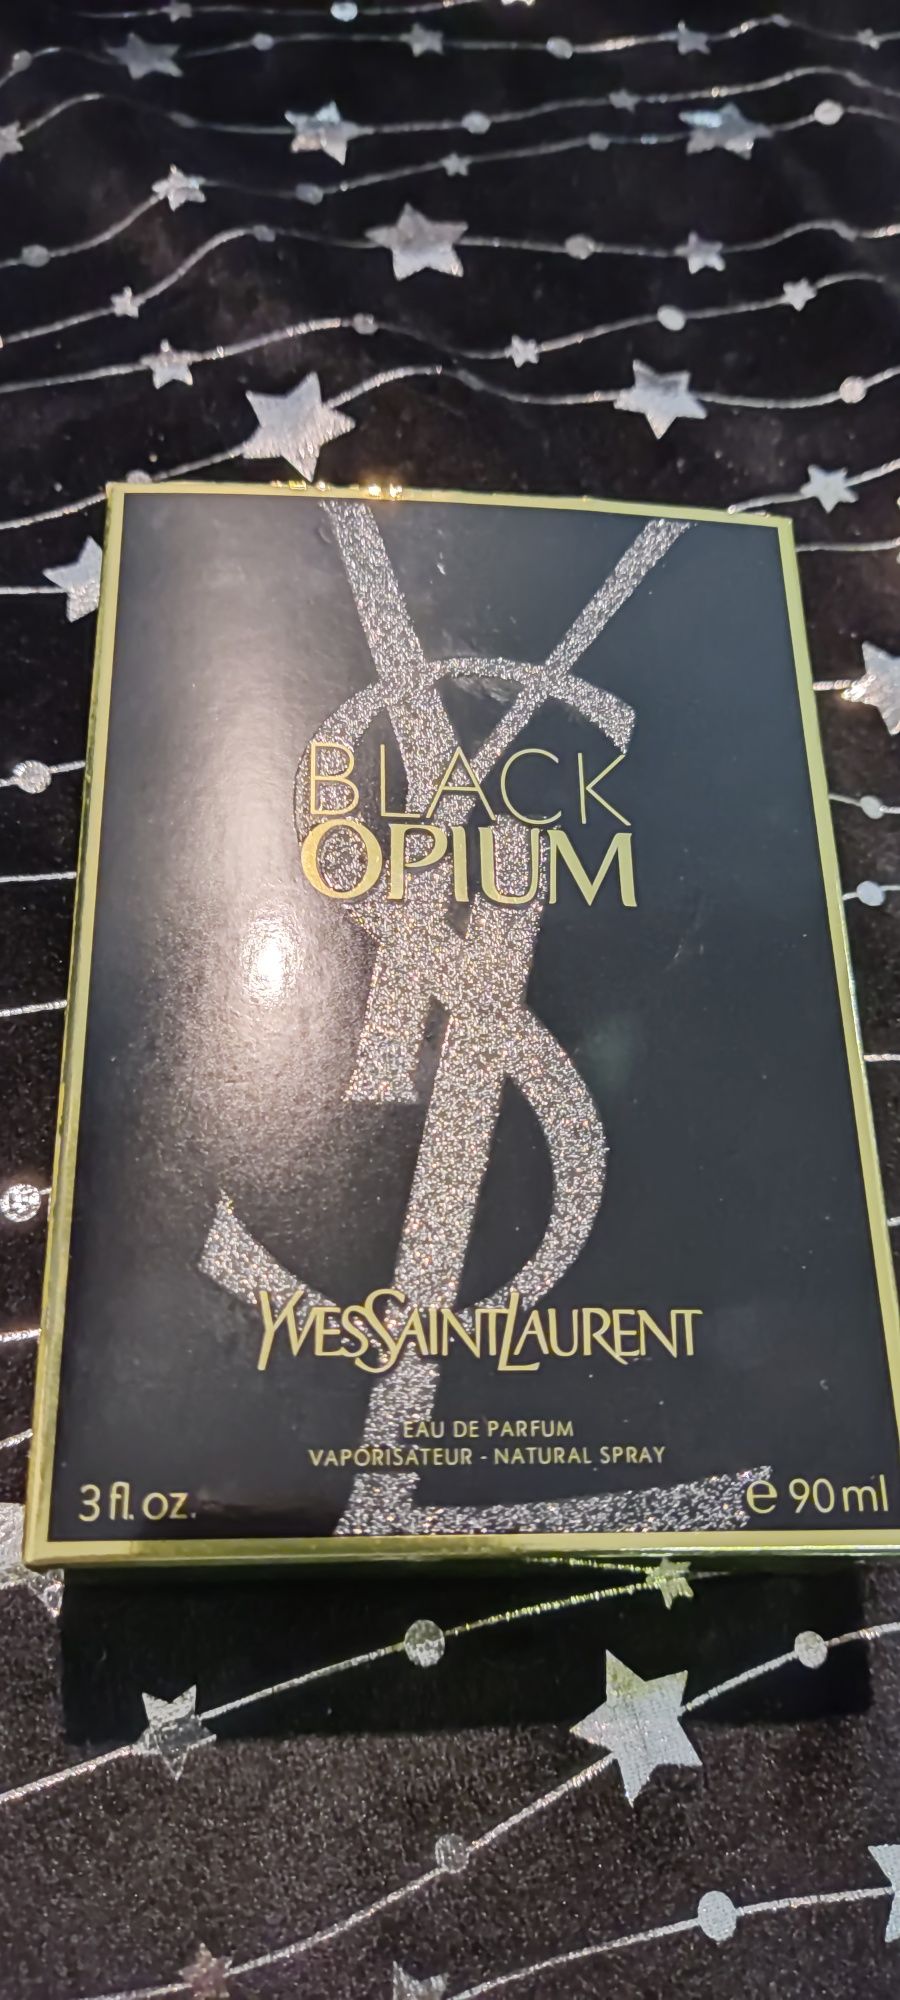 Black opium 90 ml wysyłka olx